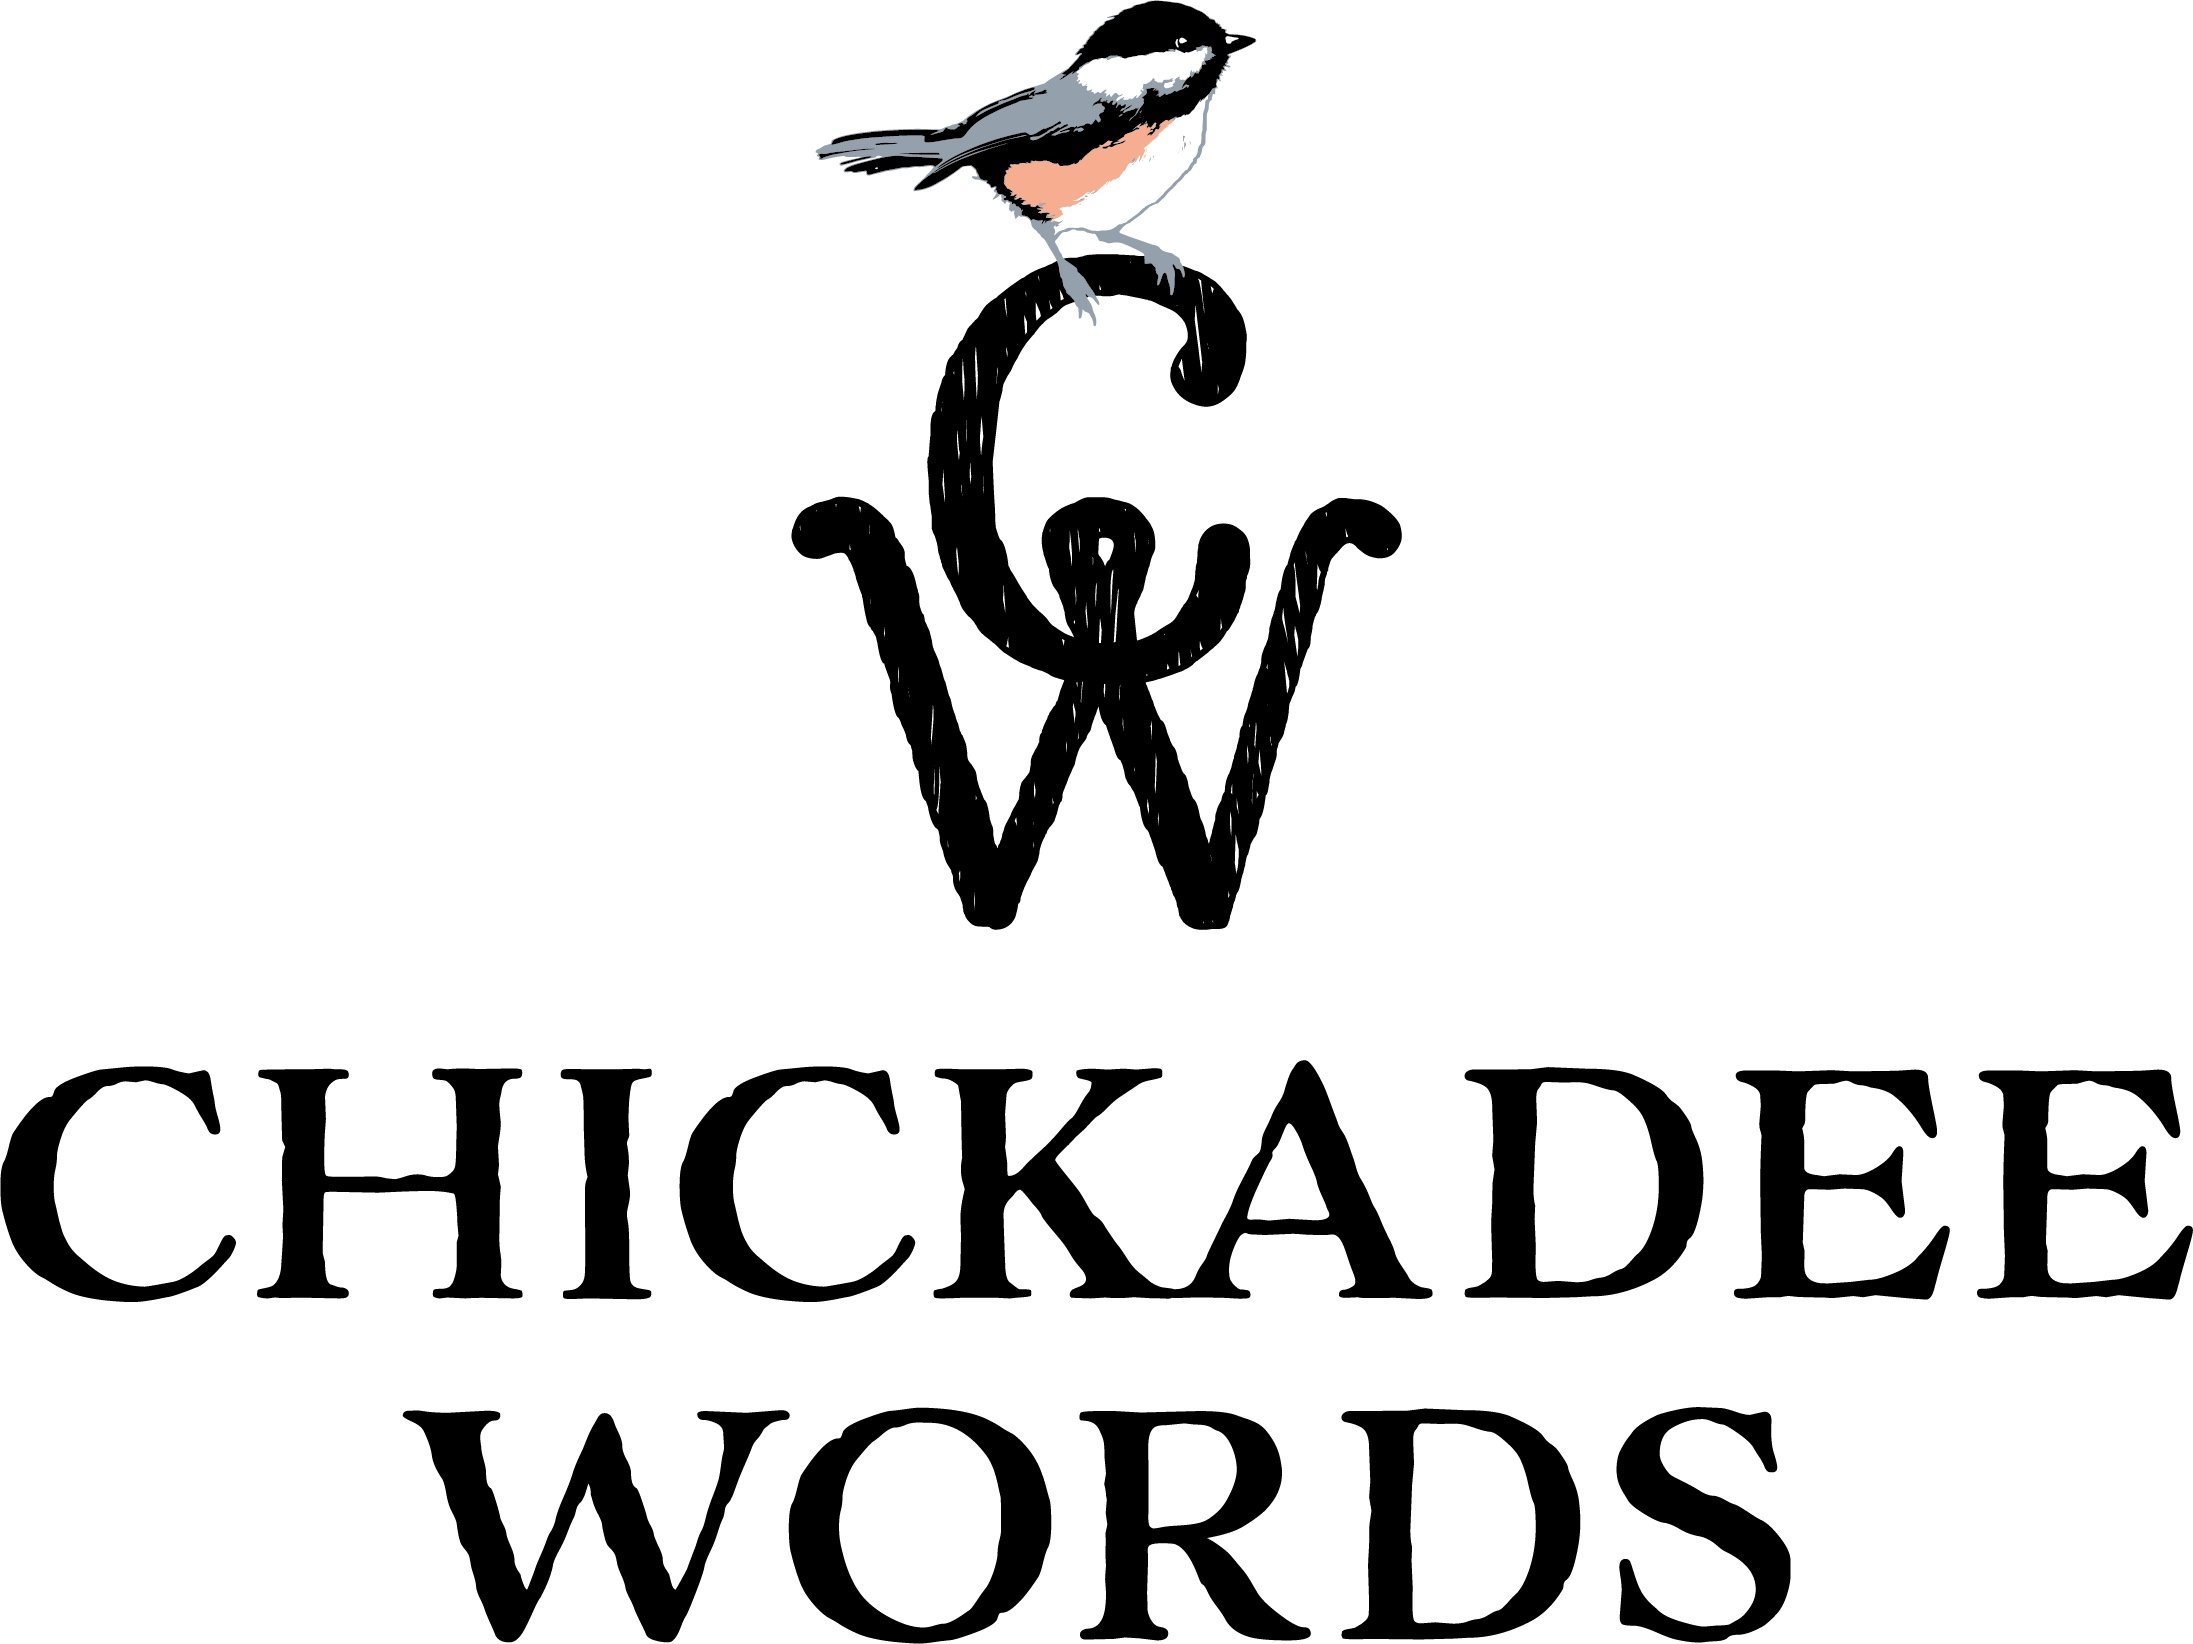 Chickadee Words